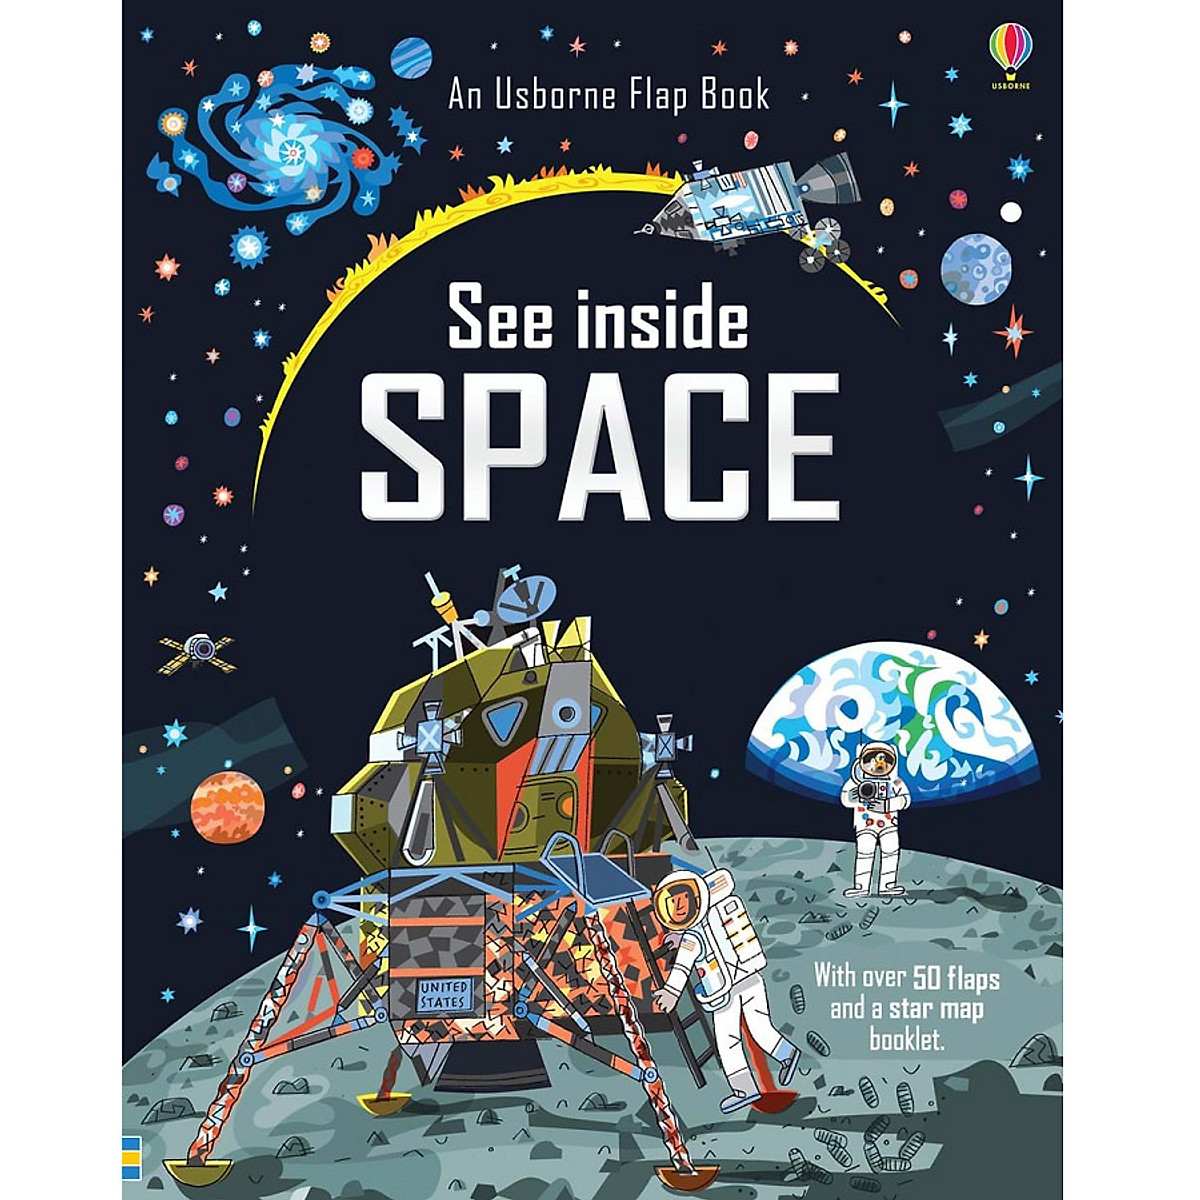 Sách tương tác tiếng Anh - Usborne See inside space